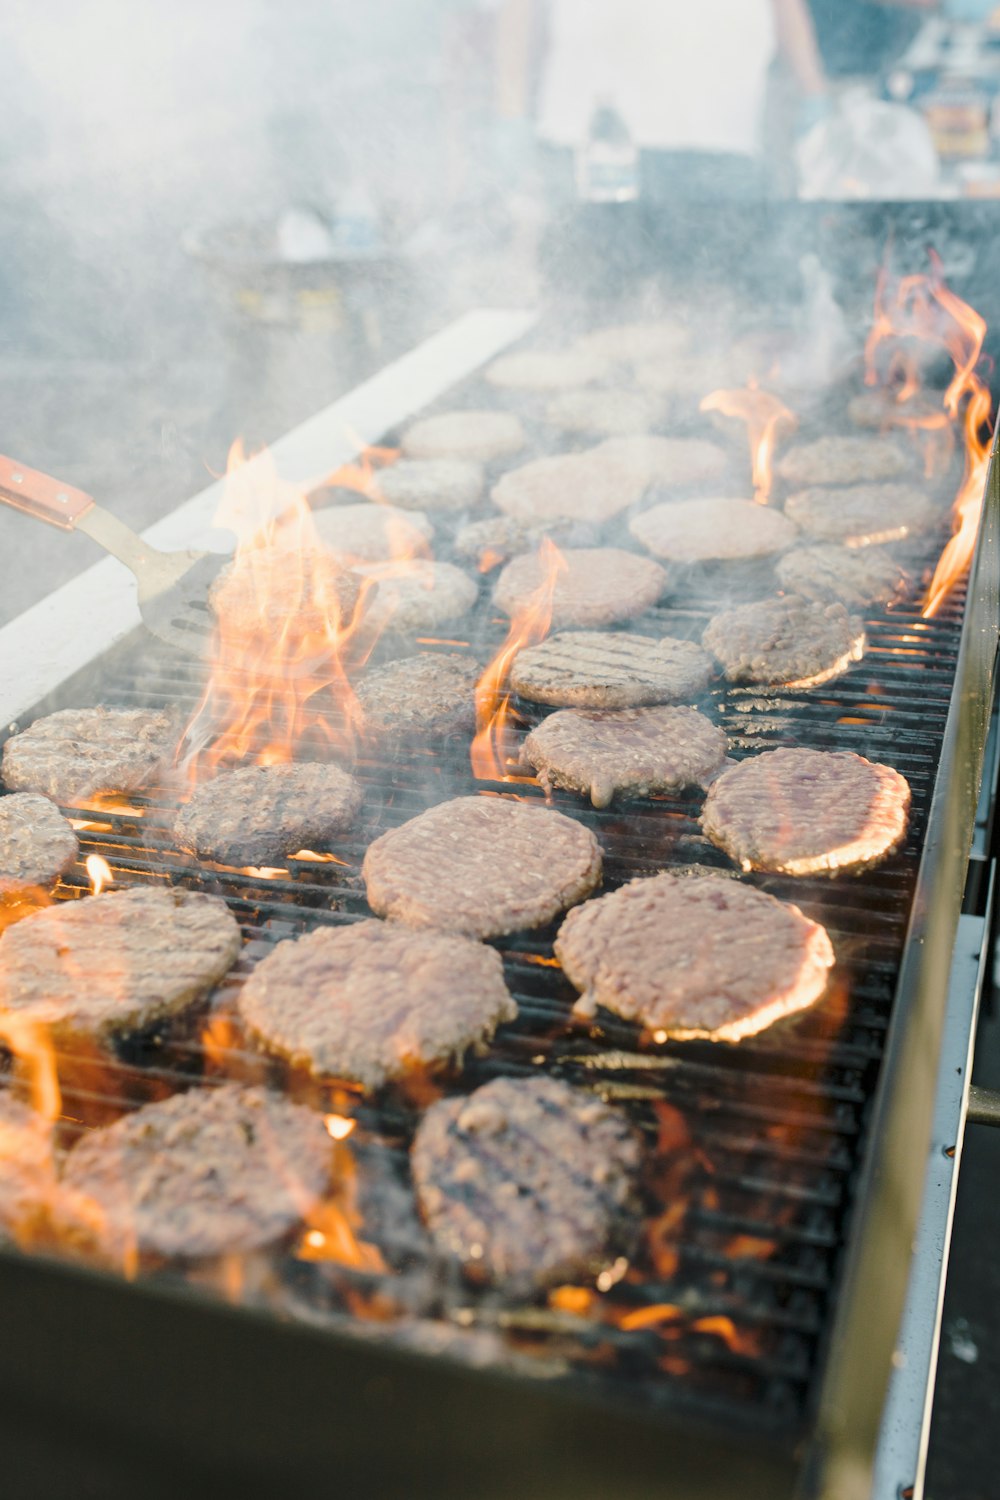 hamburgers and hamburger patties cooking on a grill